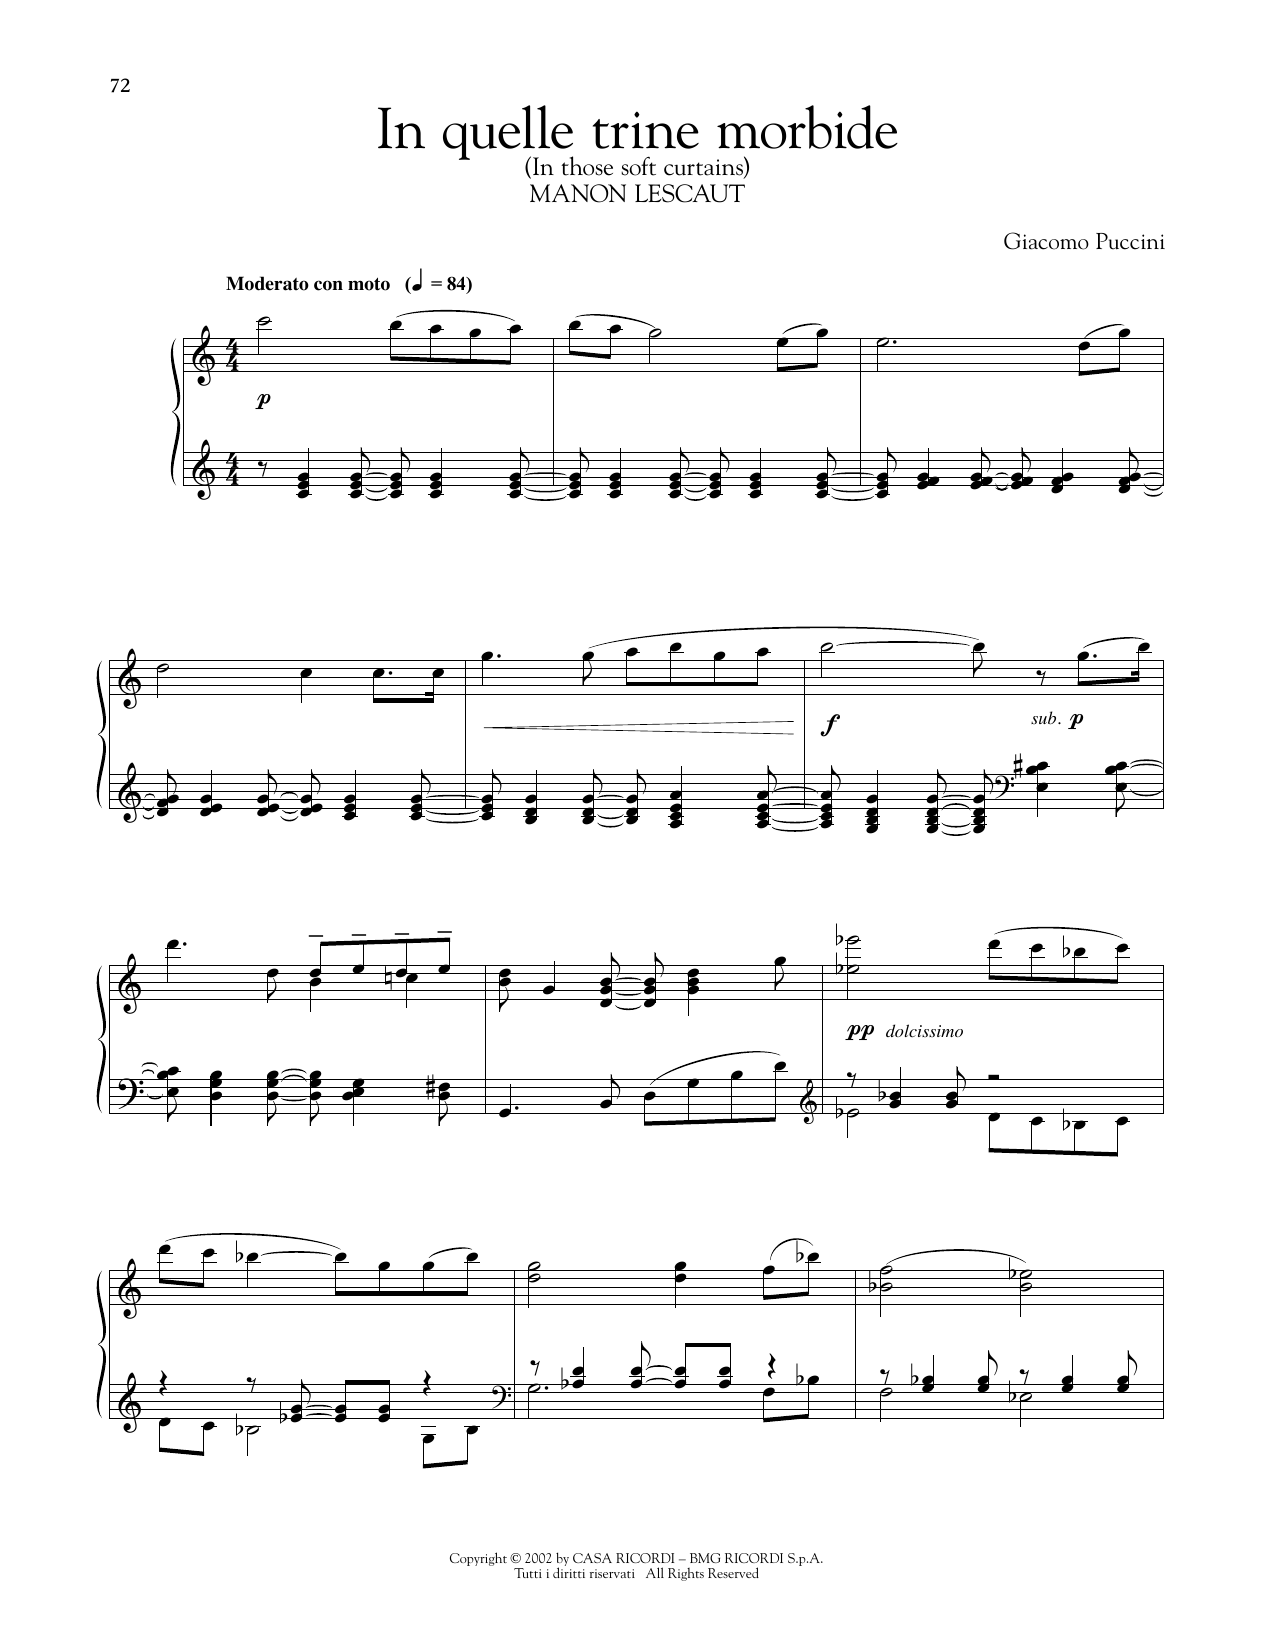 Giacomo Puccini In Quelle Trine Morbide sheet music notes printable PDF score